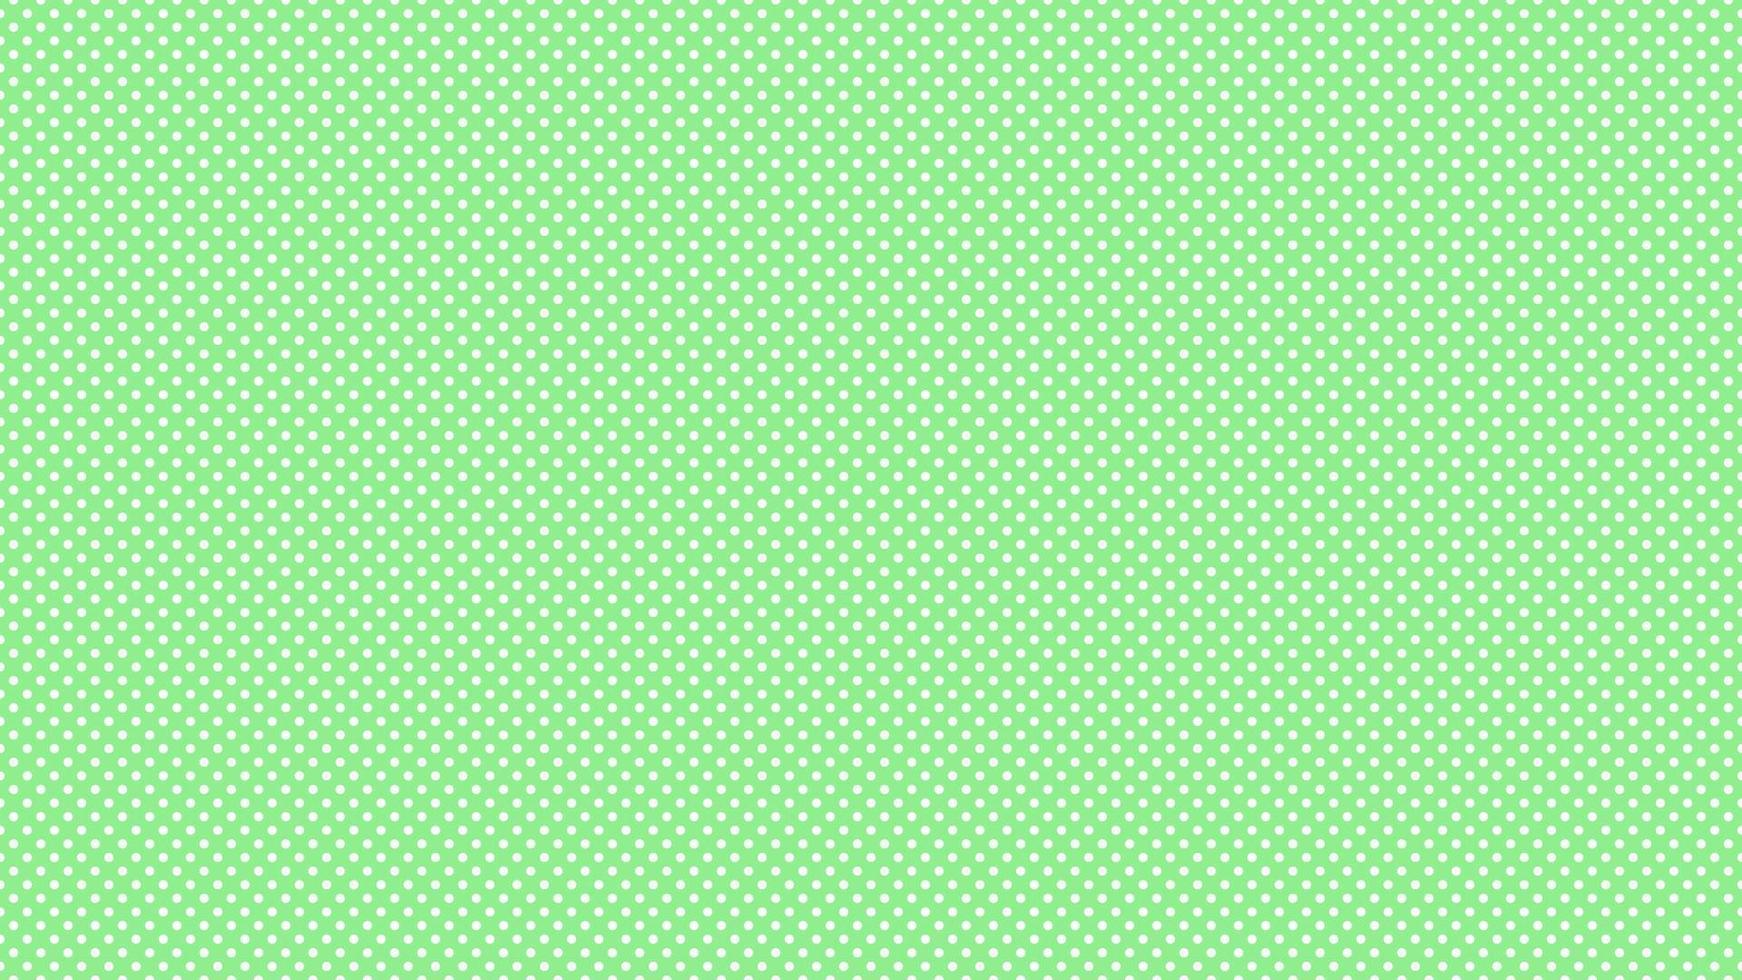 bianca colore polka puntini al di sopra di leggero verde sfondo vettore